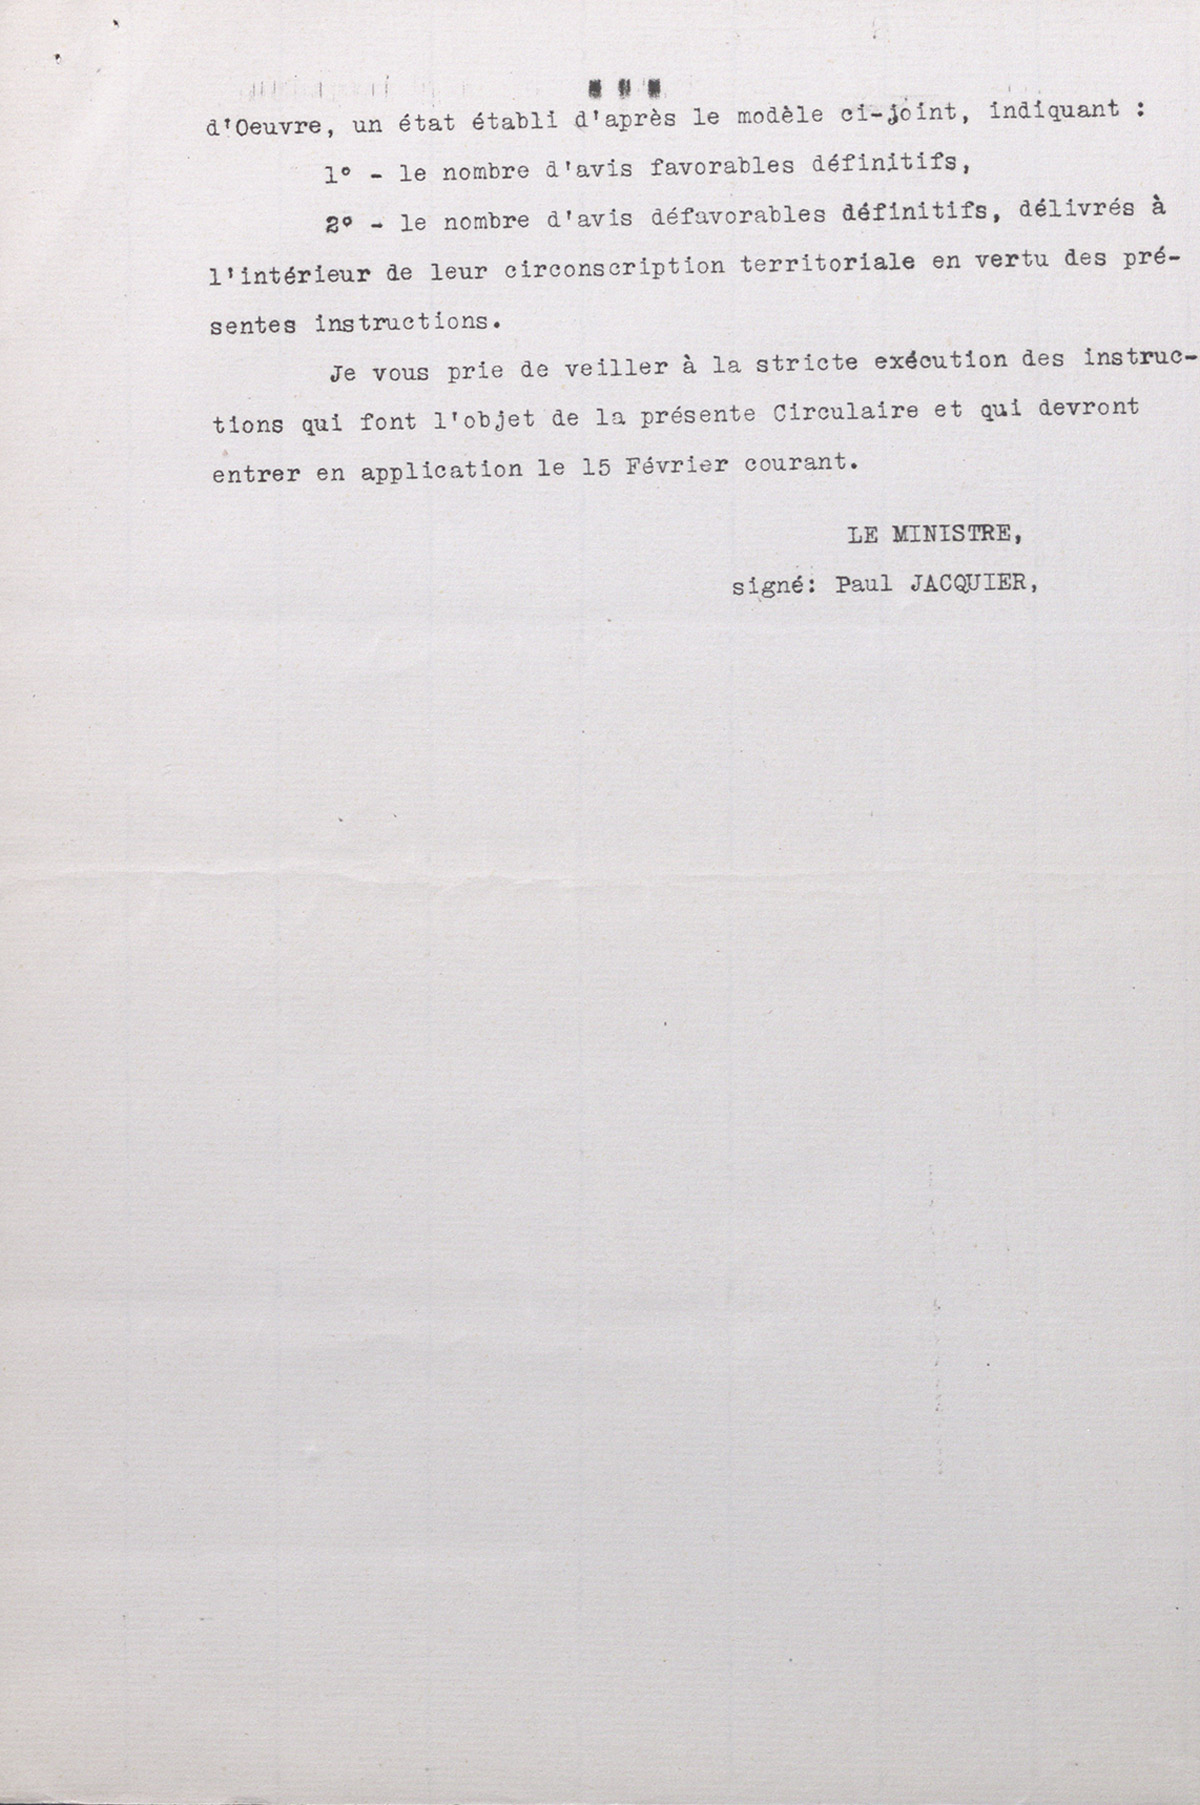 Fiche de renseignements émanant du Ministère du travail accompagnée d'une lettre confidentielle du Ministre du travail sur le renouvellement des cartes d'identité des travailleurs étrangers, 12 février 1935